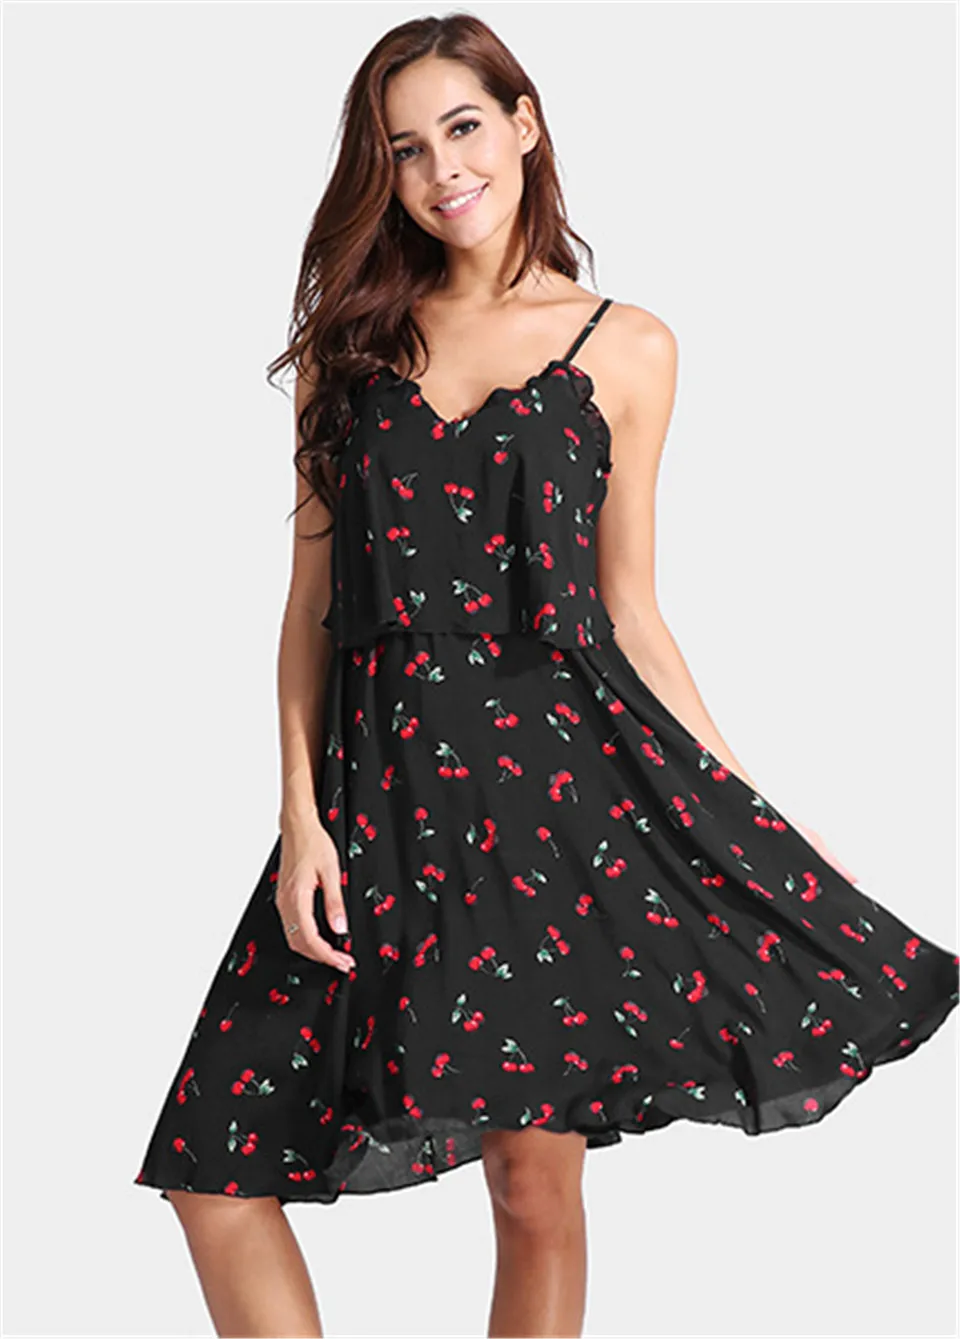 Elimiiya модное женское платье на бретельках с принтом вишни Элегантное платье без рукавов с большим маятником женская шифоновая одежда - Цвет: Black